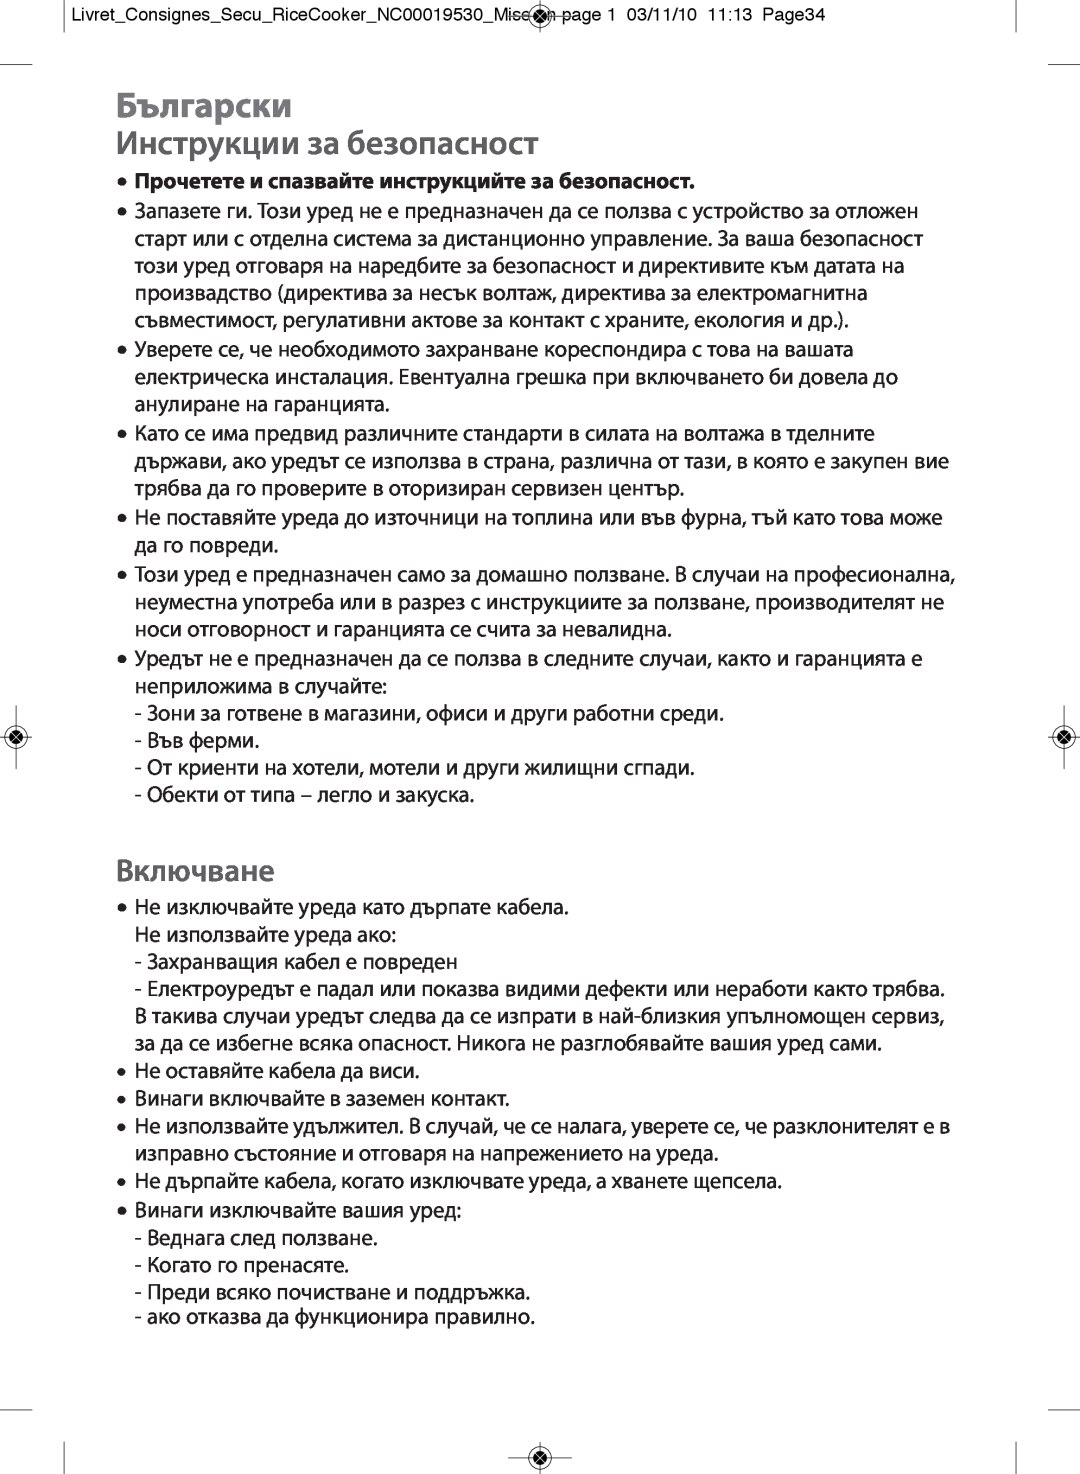 Tefal RK400951 manual Български, Инструкции за безопасност, Включване, Прочетете и спазвайте инструкцийте за безопасност 